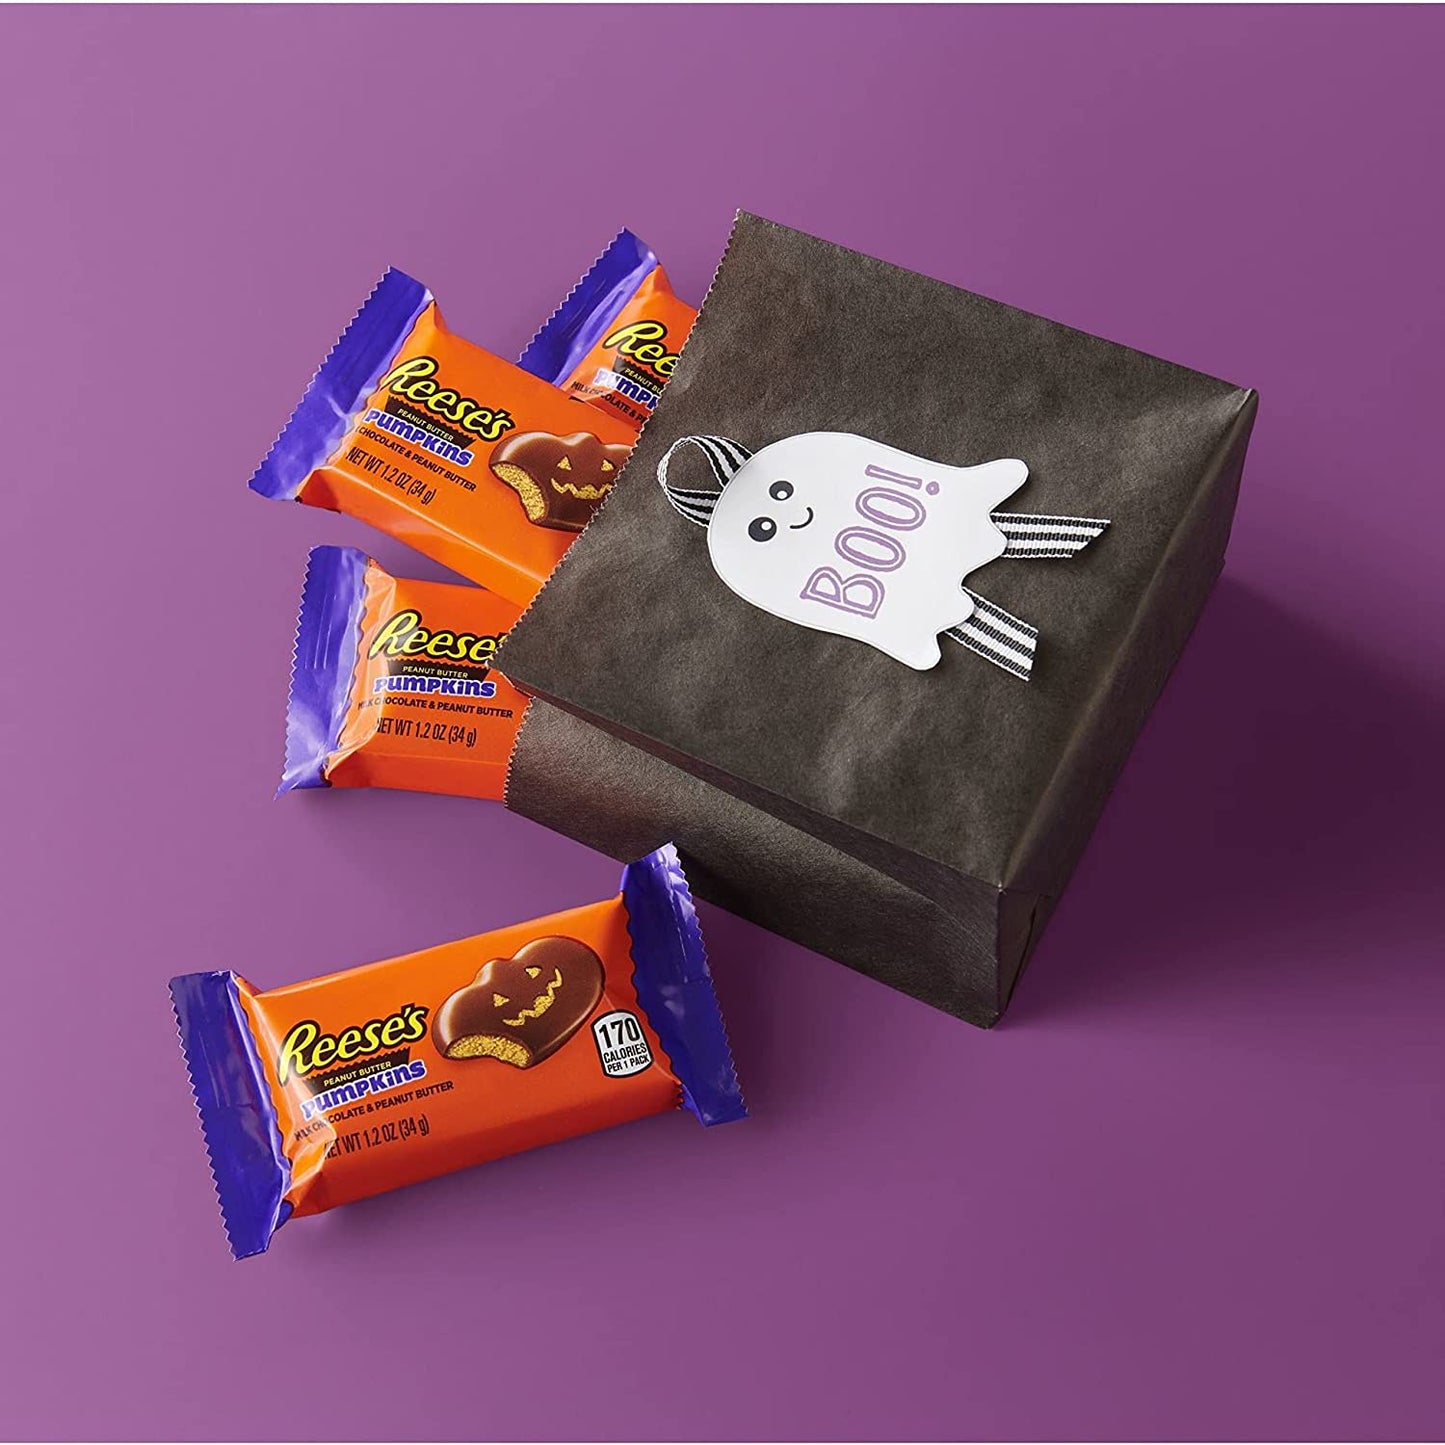 REESE'S Milk Chocolate Peanut Butter Pumpkins Candy, Bulk Halloween, 1.2 oz Packs (36 Count)